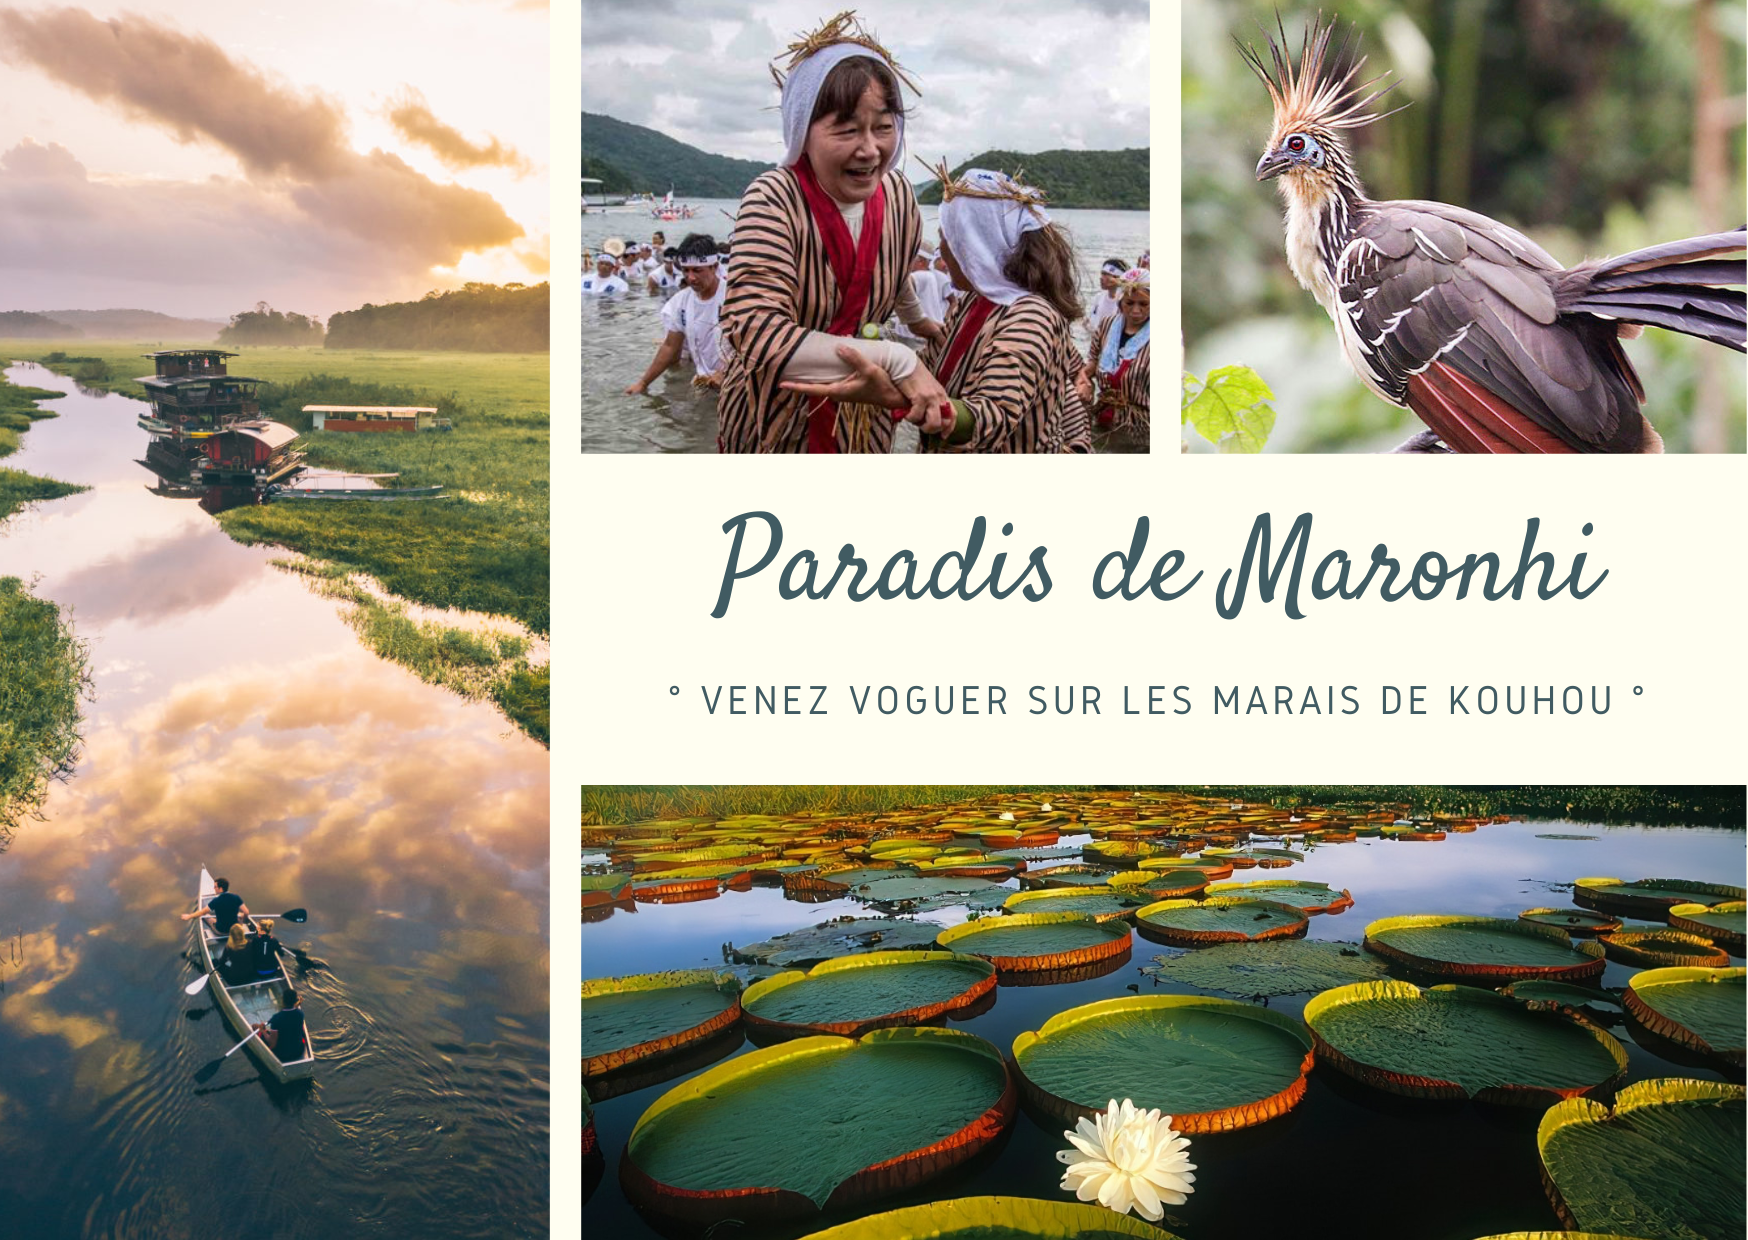 Paradis de Maronhi : Marais de Kouhou